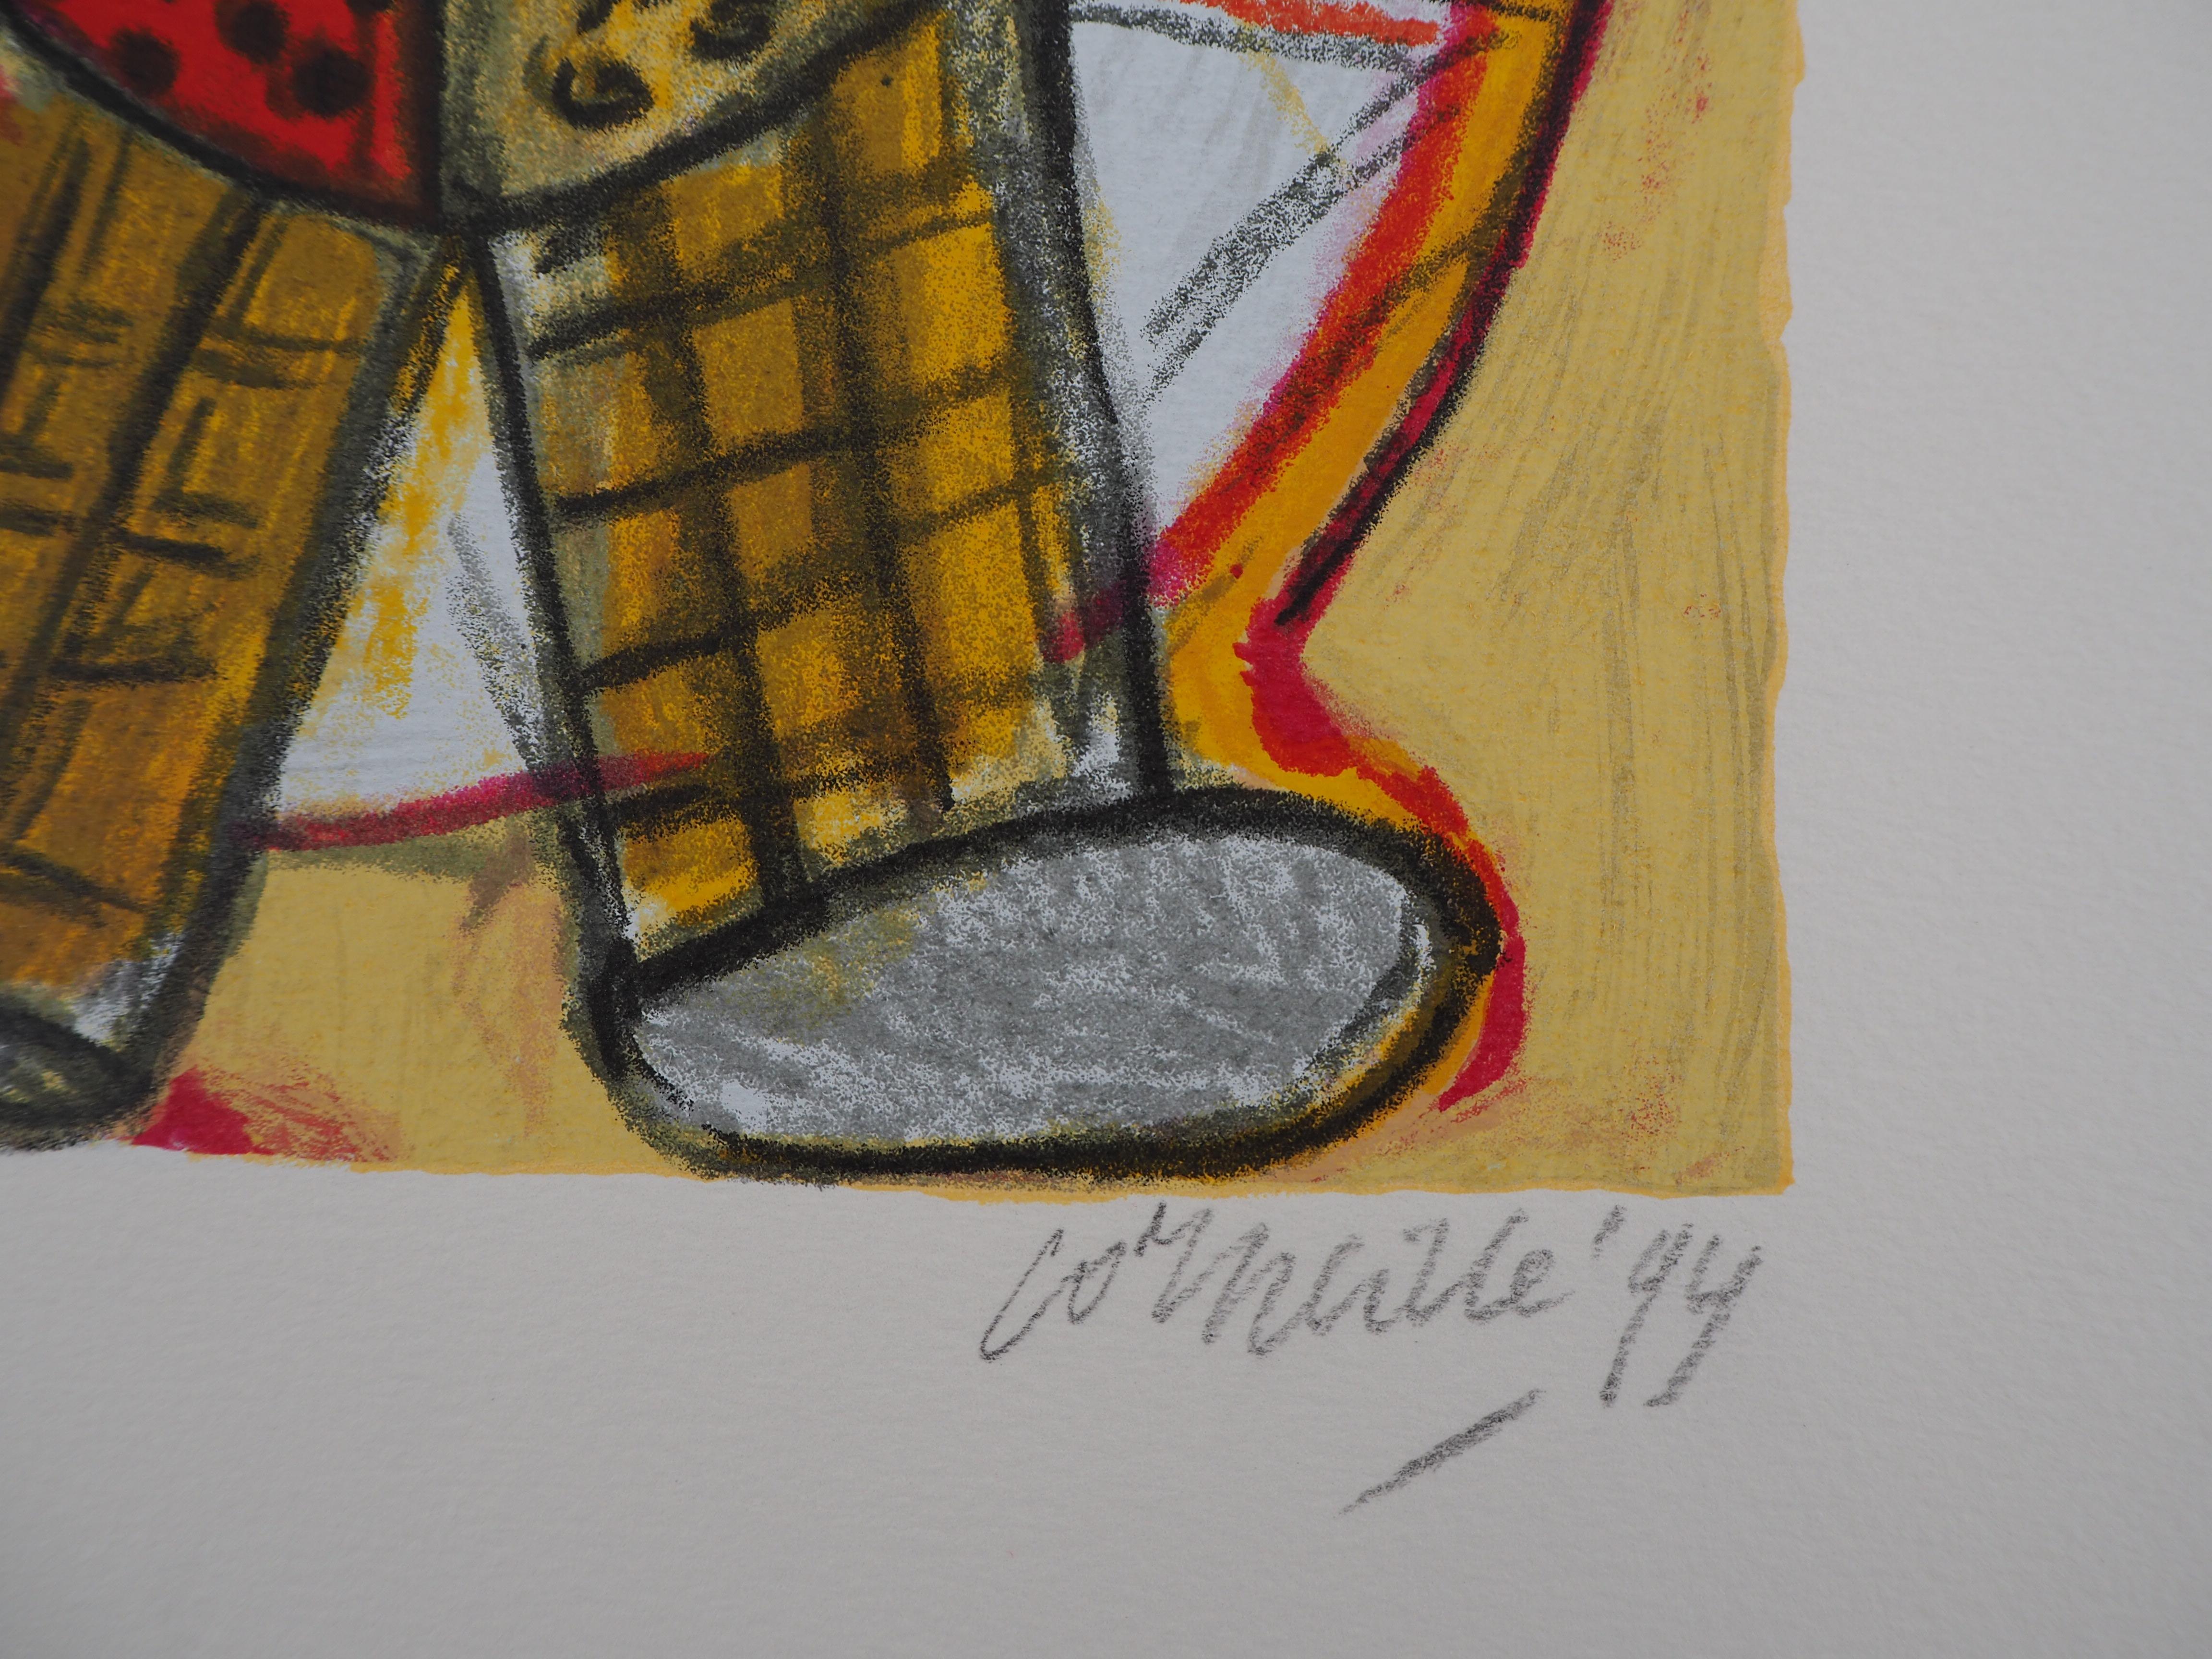 Little Clown in Rot und Gelb - Original handsignierte Lithographie - 200 ex – Print von Corneille